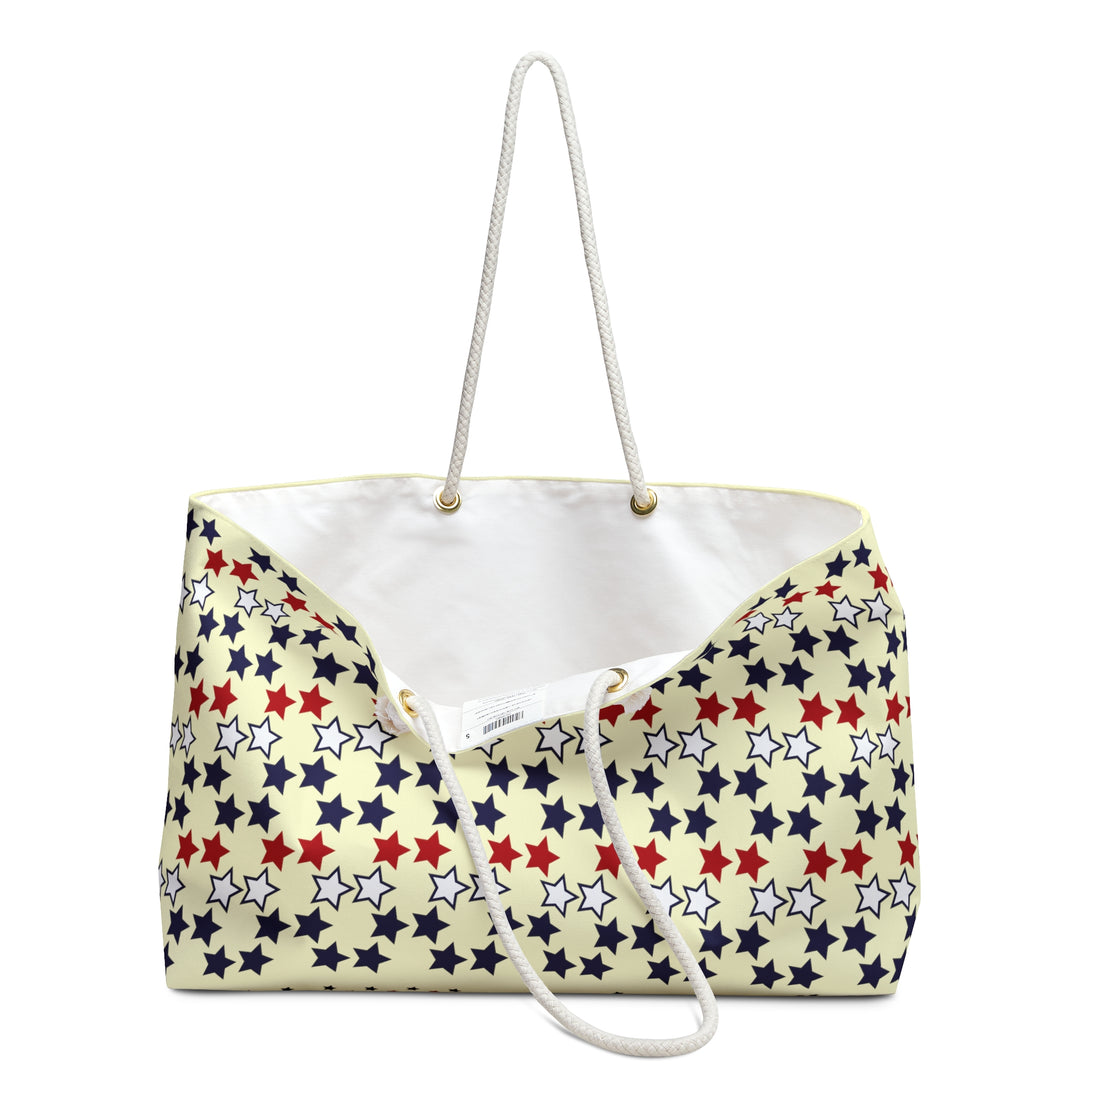 Cream Starry Weekender Tote Bag